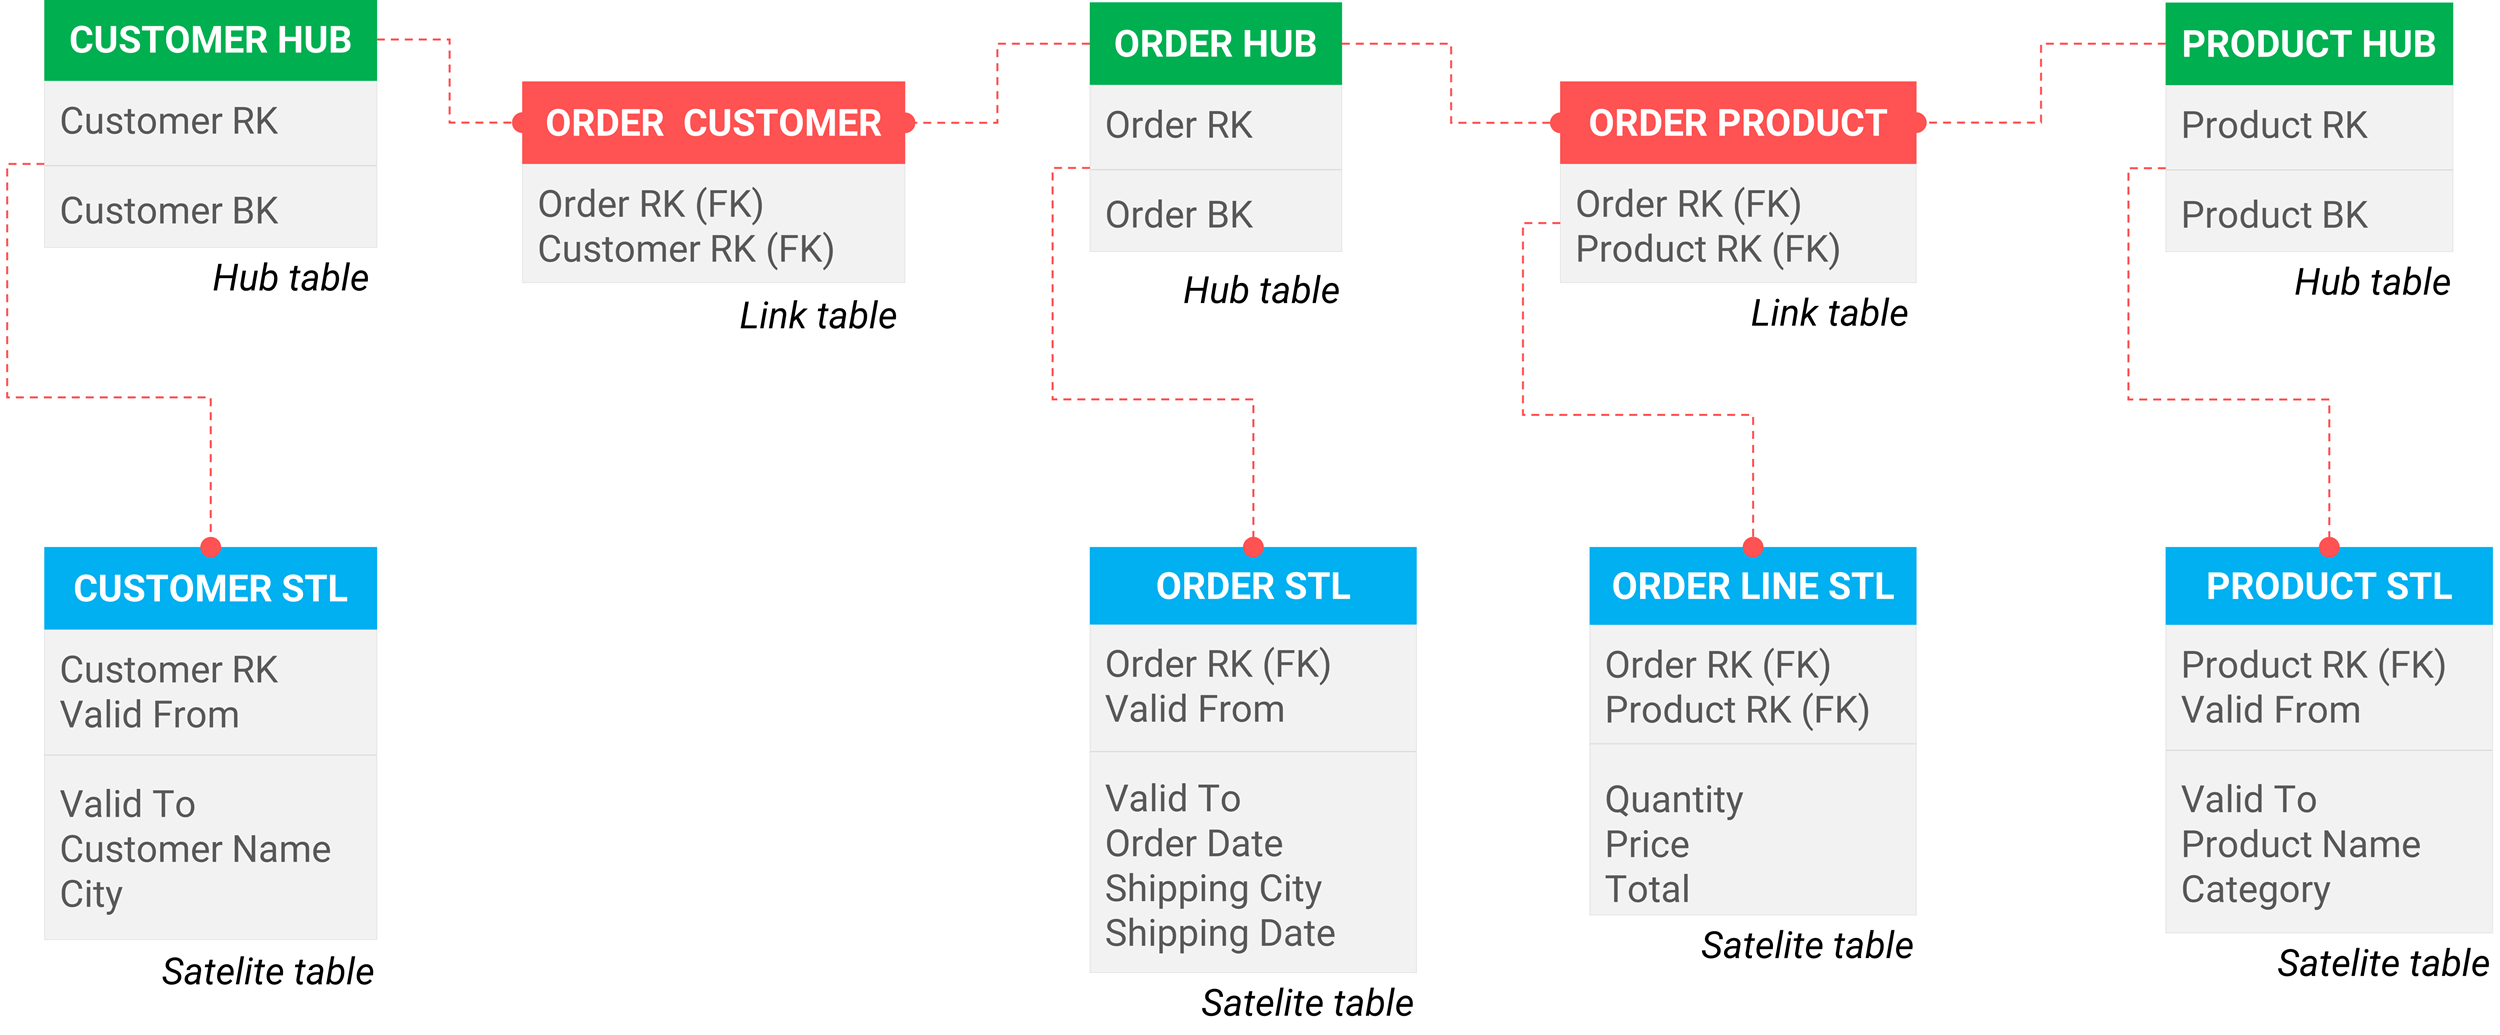 orders van een bedrijf gemodelleerd volgens de Data Vault